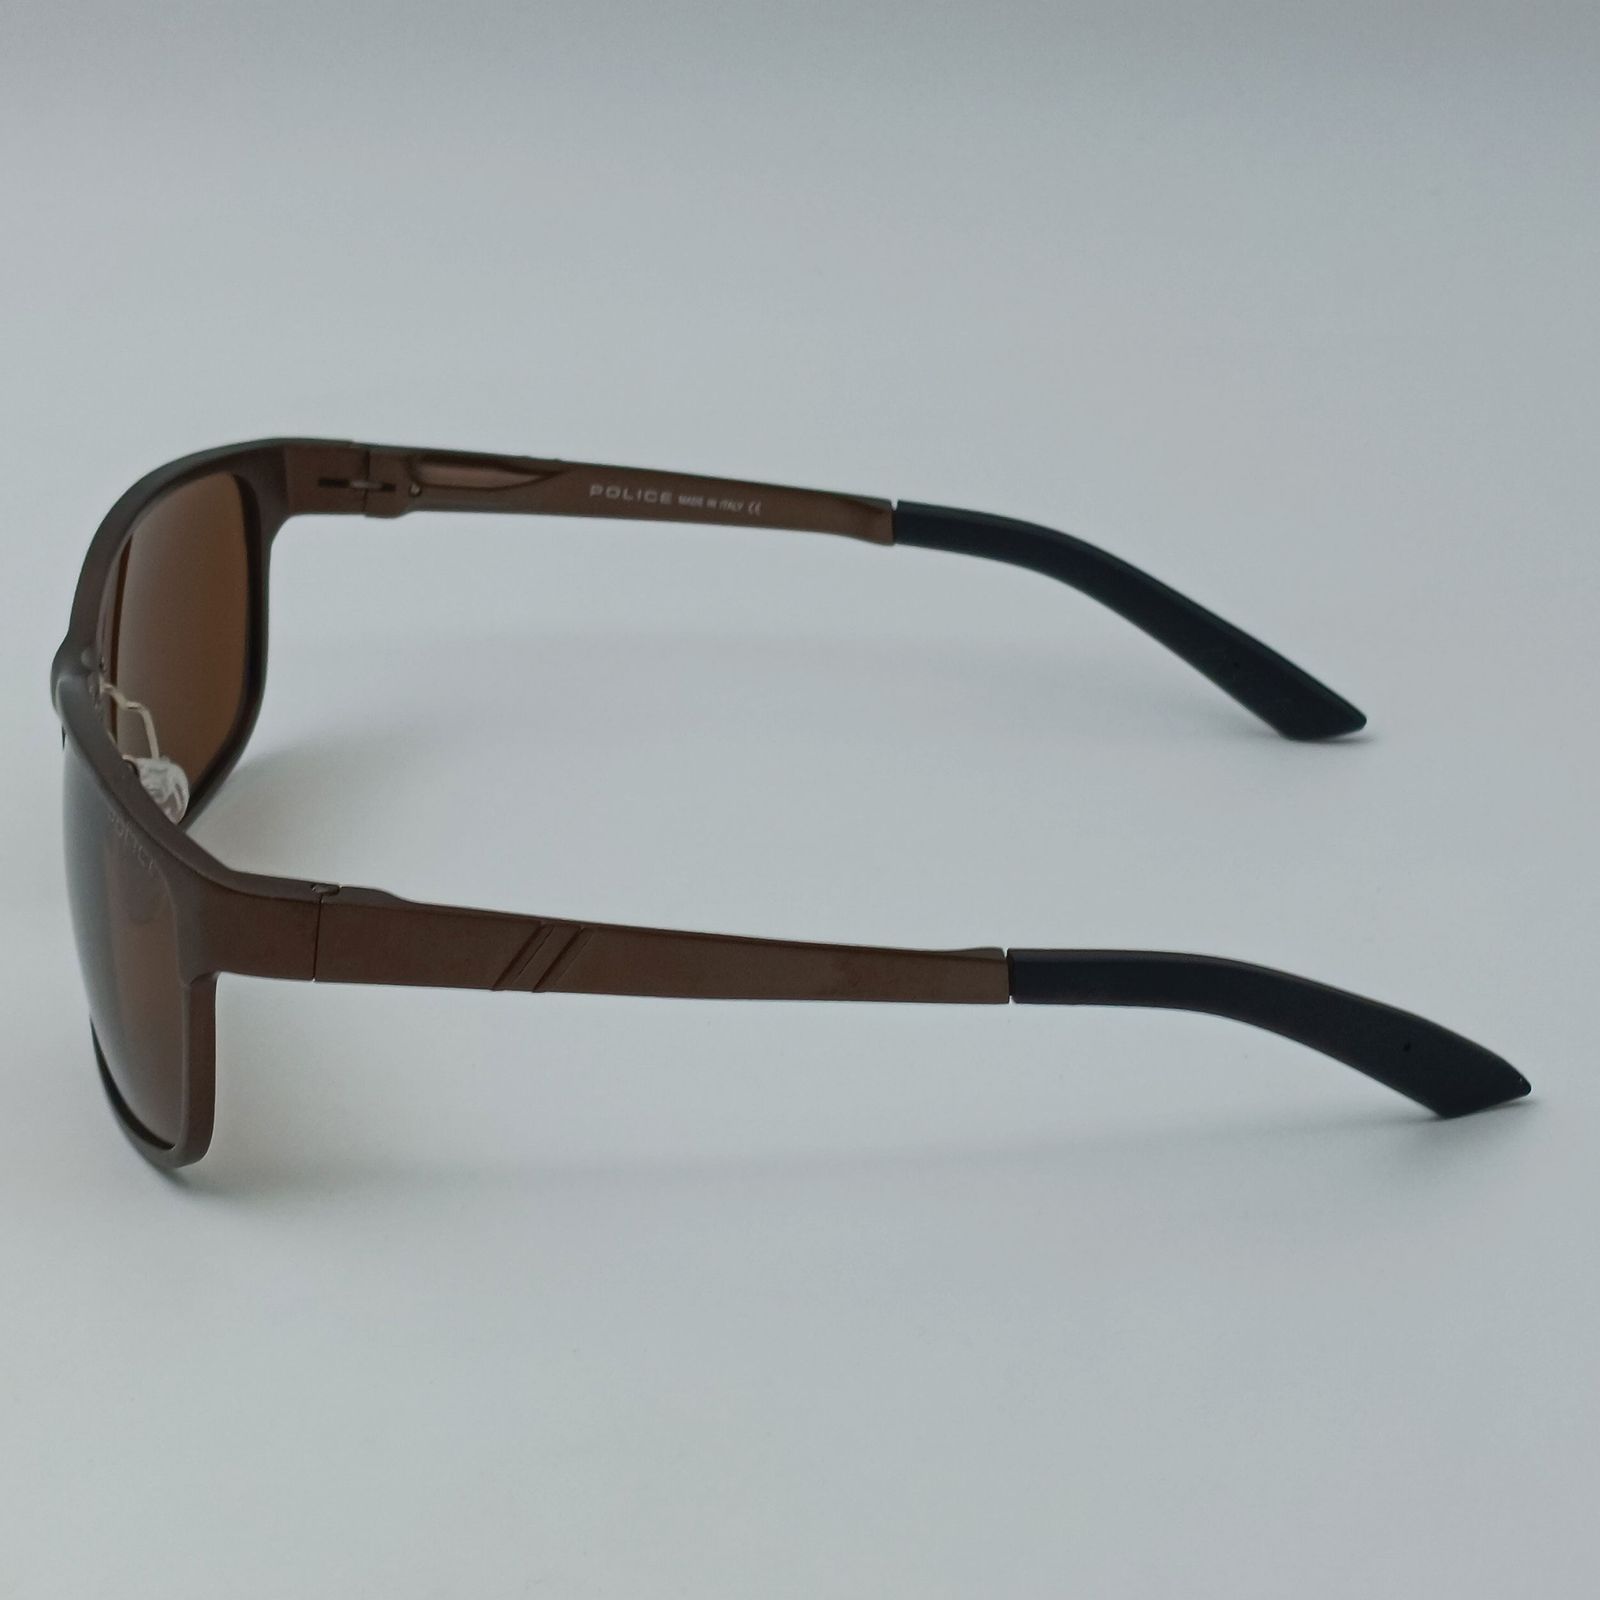 عینک آفتابی پلیس مدل 6013 C2 -  - 6